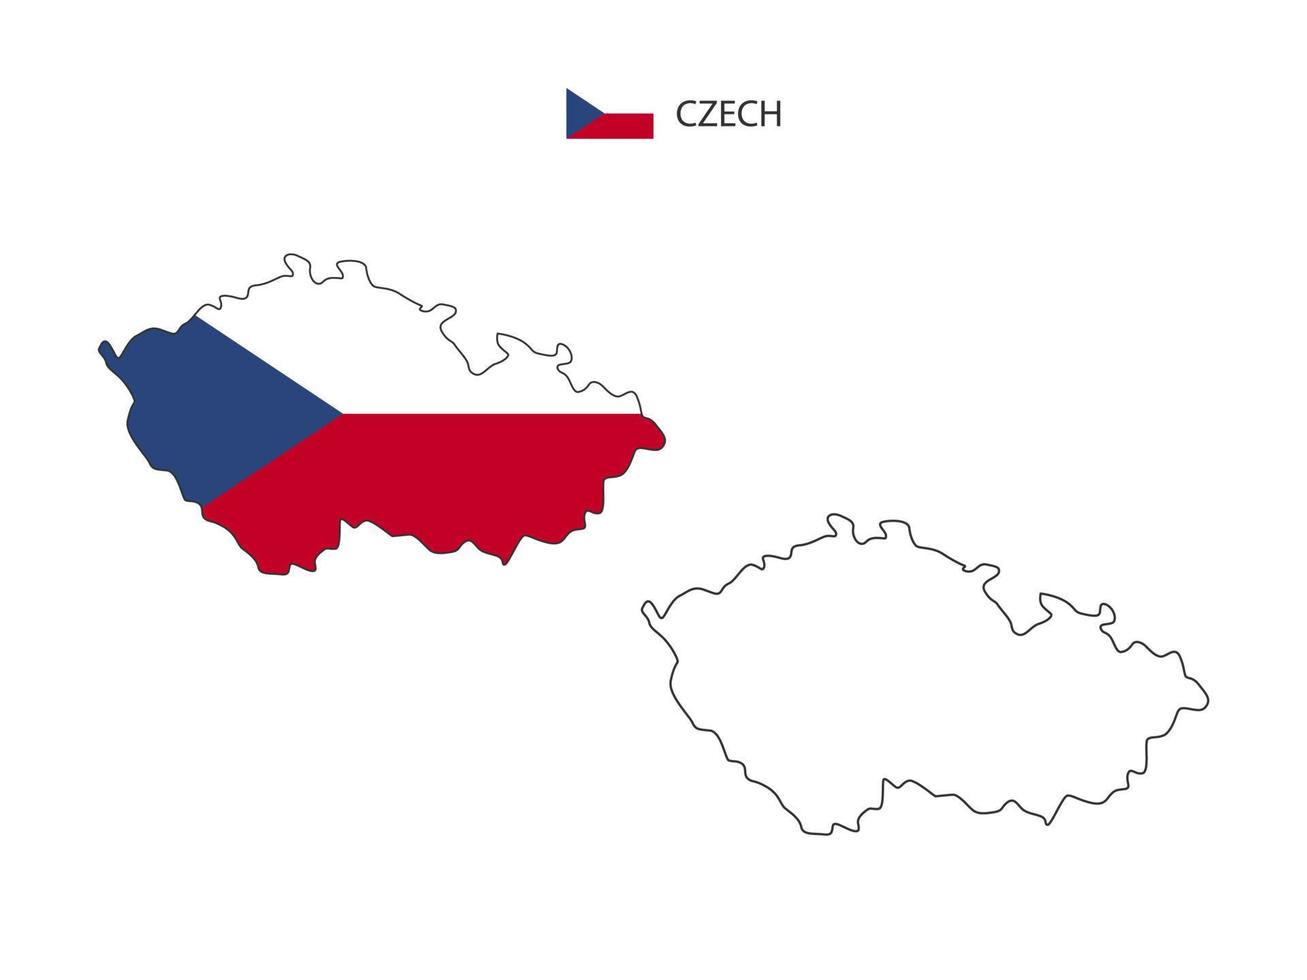 Tsjechisch kaart stad vector verdeeld door schets eenvoud stijl. hebben 2 versies, zwart dun lijn versie en kleur van land vlag versie. beide kaart waren Aan de wit achtergrond.